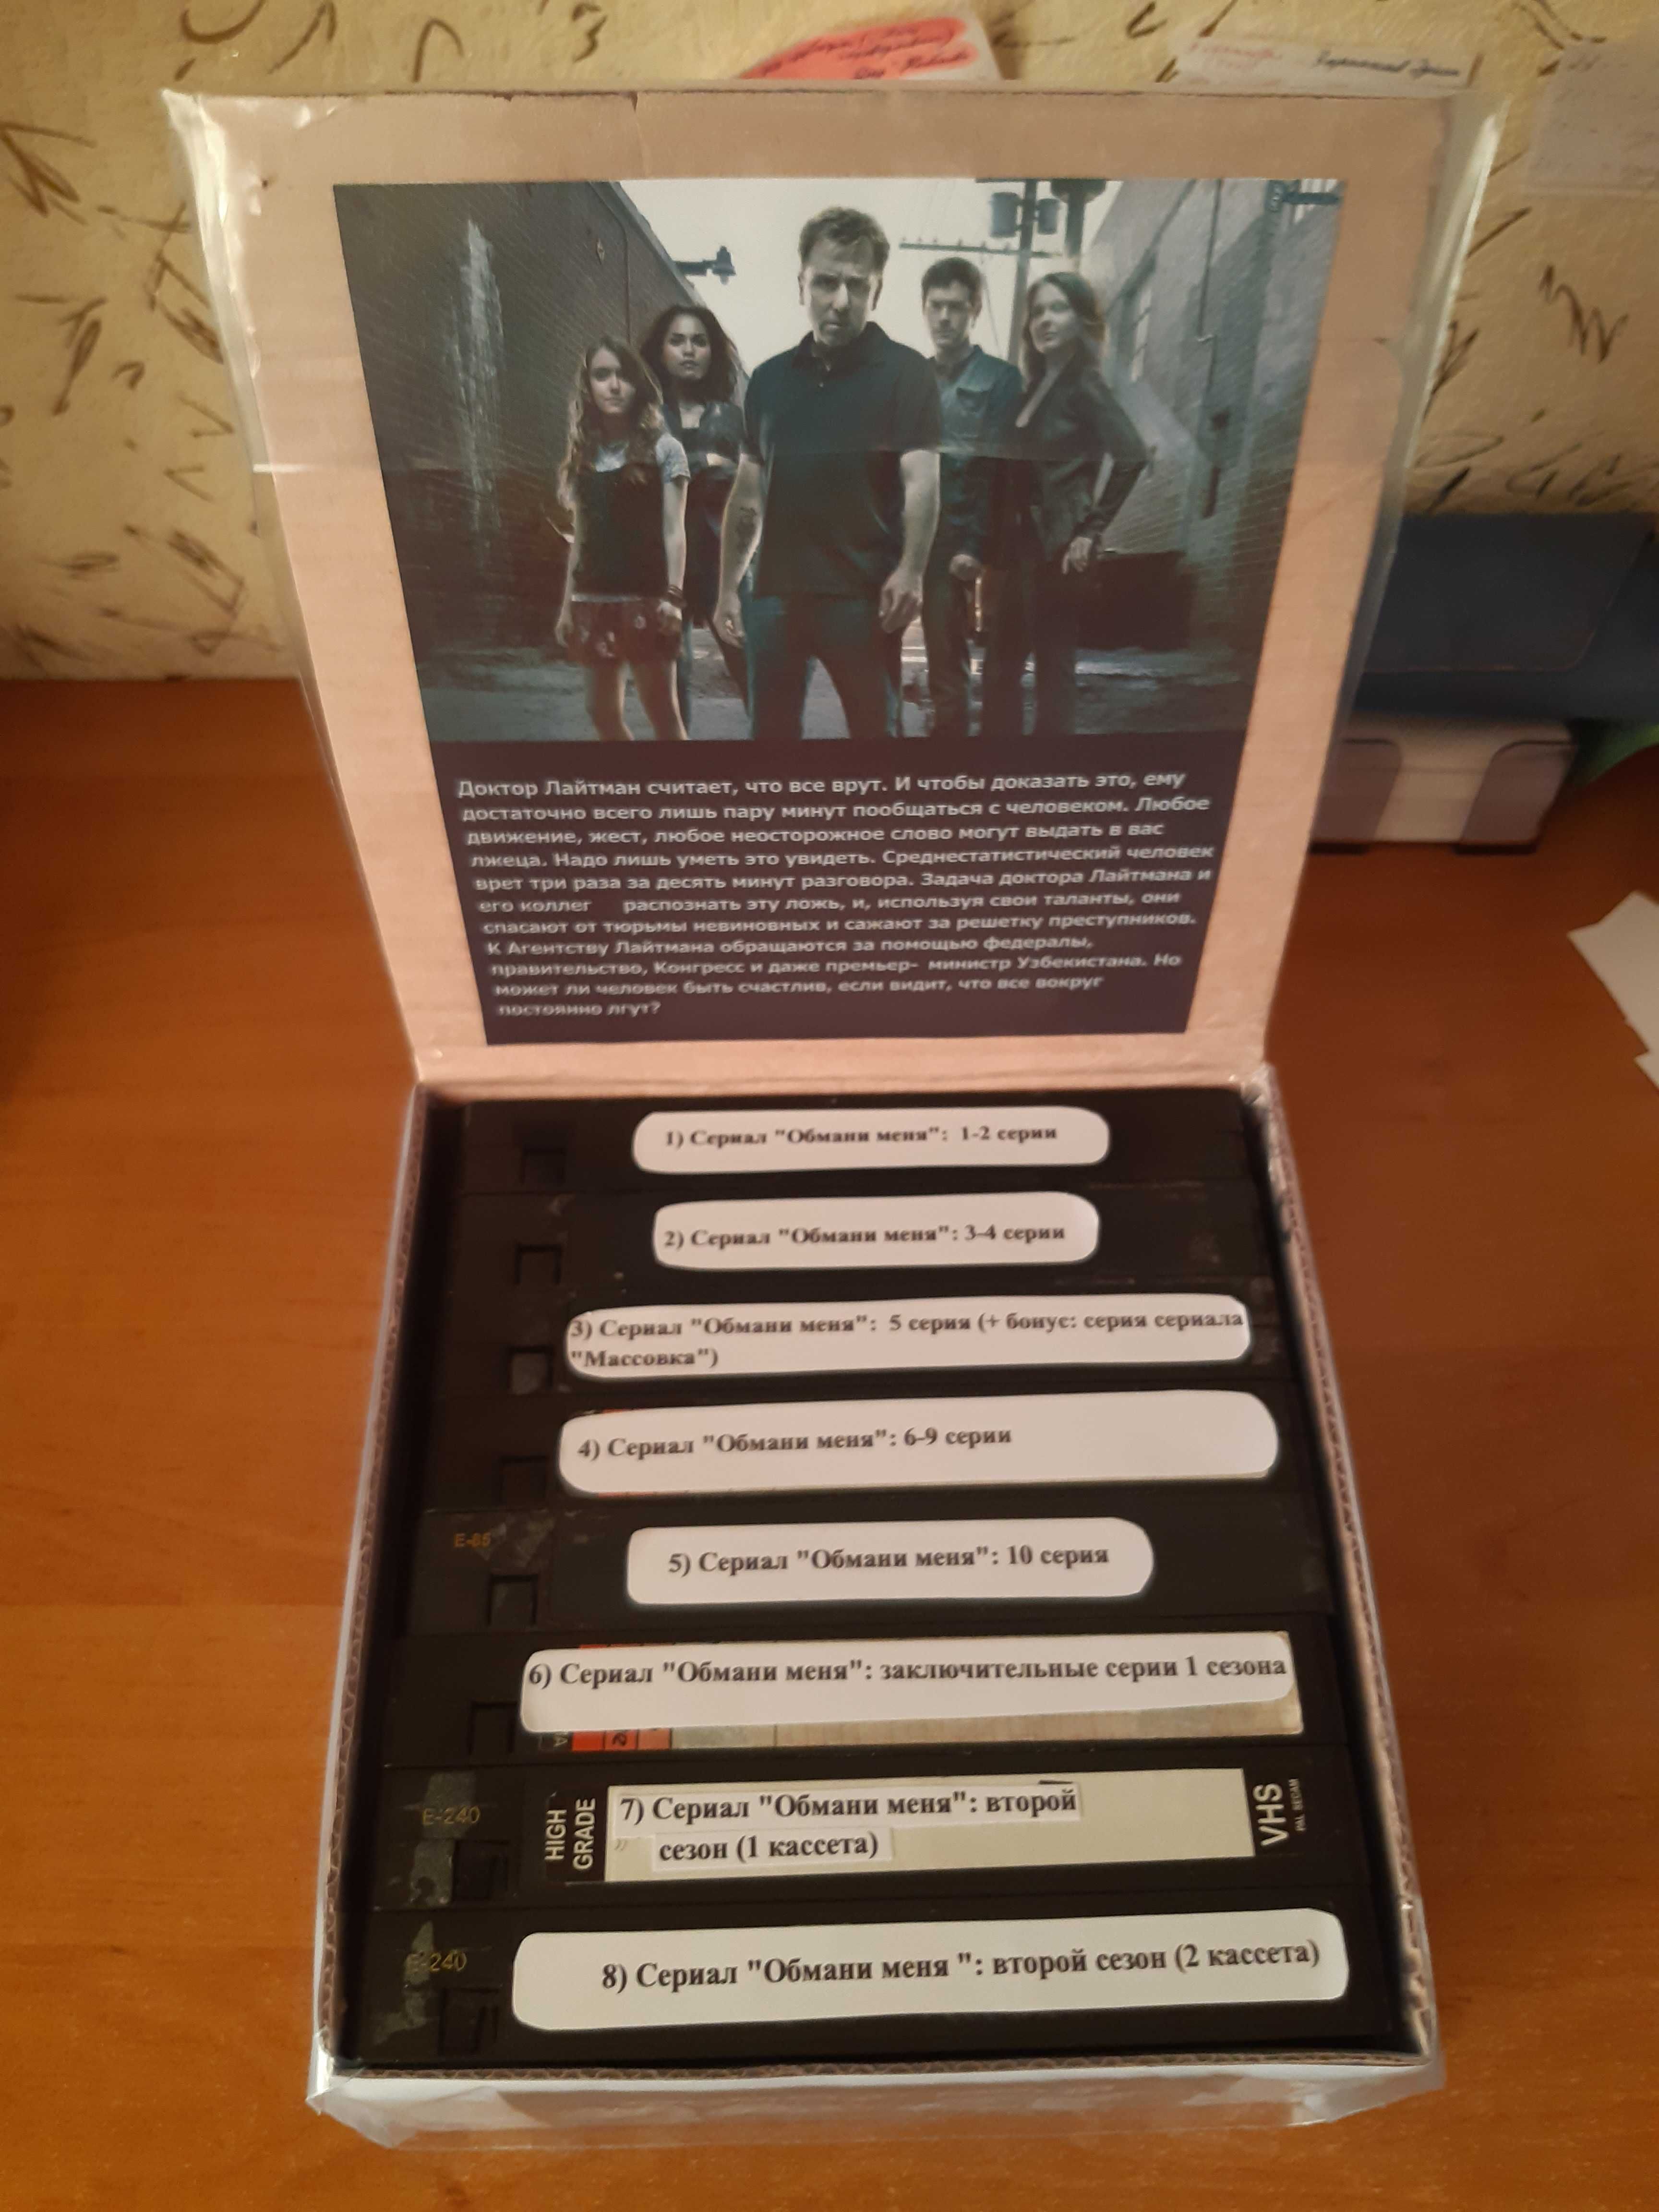 Продам набор VHS-кассет (сериал "Обмани меня")